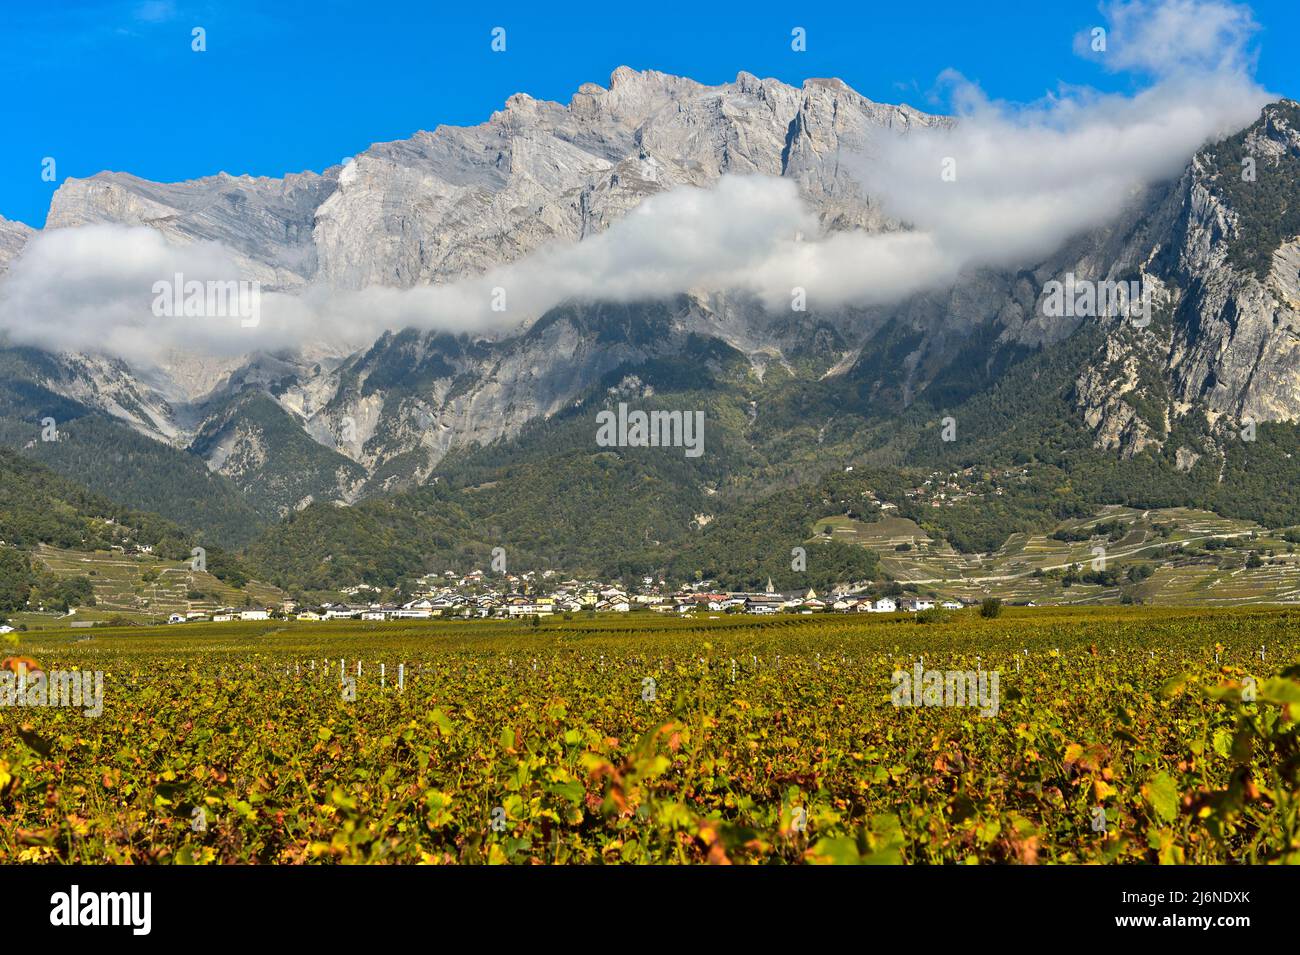 Región vinícola de Chamoson frente a los acantilados de la cumbre de Haut de Cry, Chamoson, Valais, Suiza Foto de stock